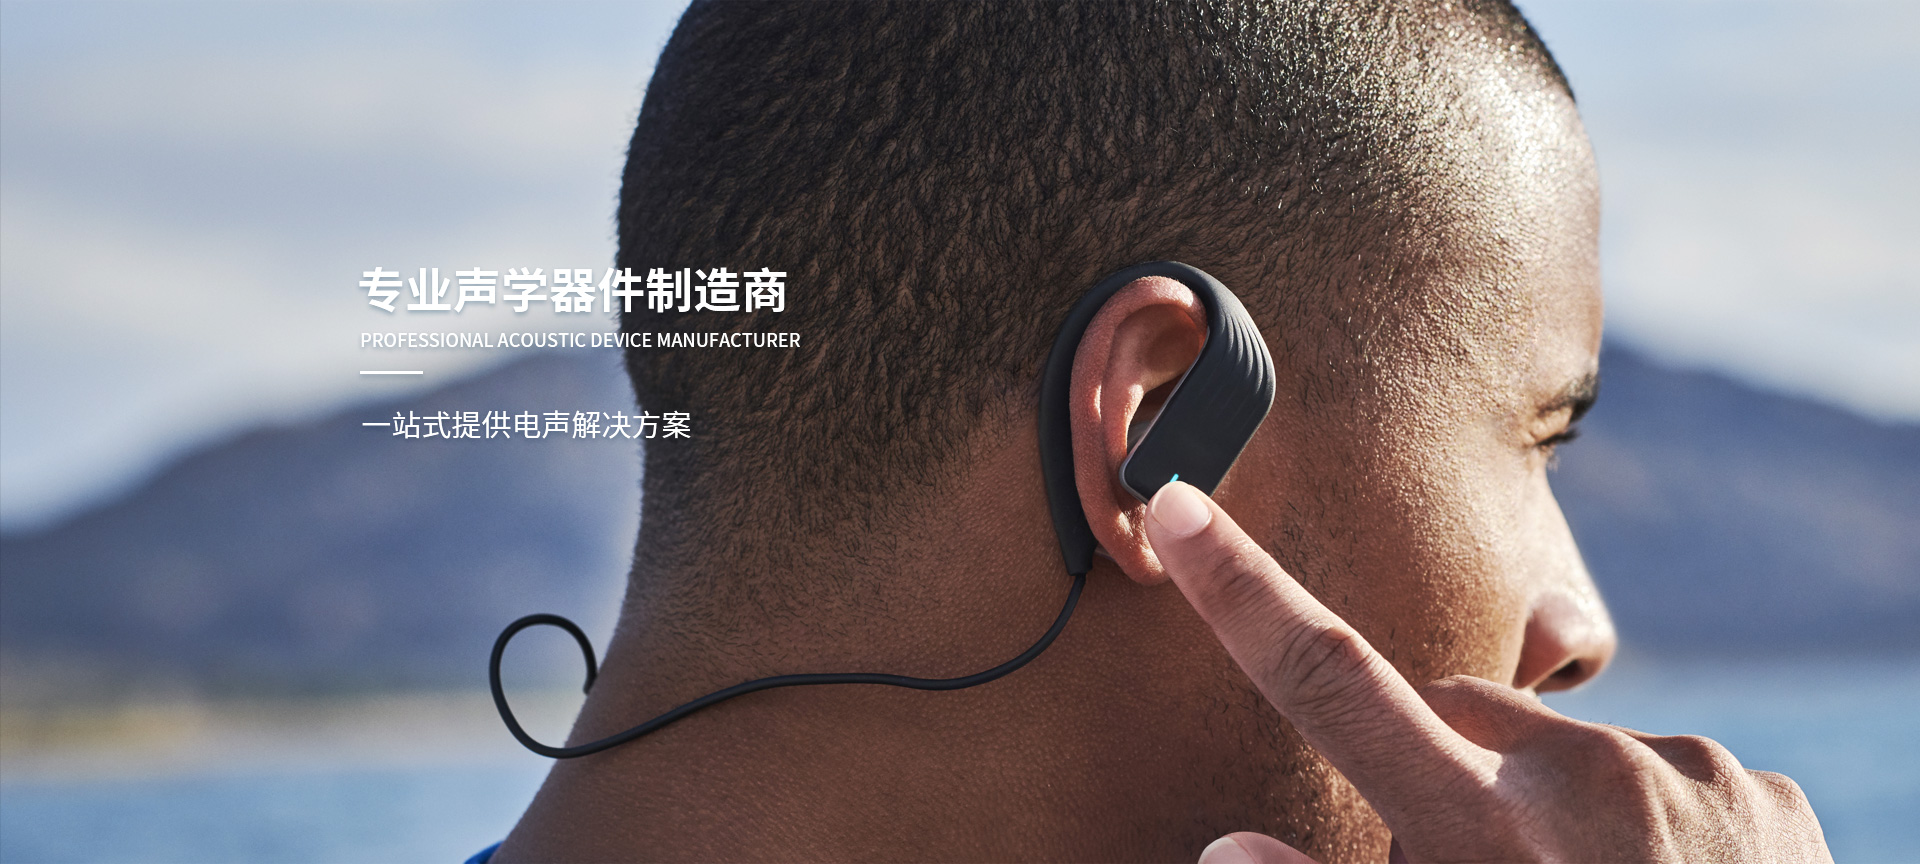 深圳市悦音电声科技有限公司-门户升级